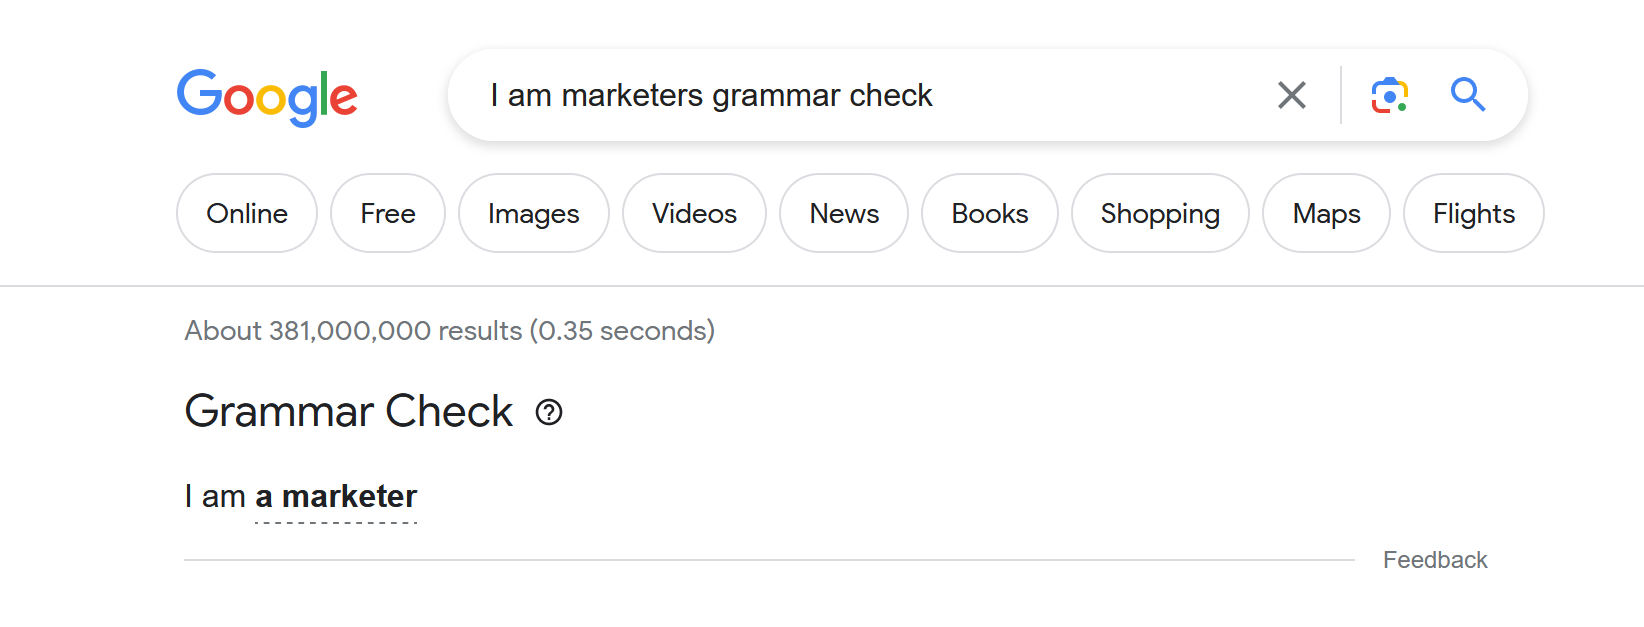 Grammar Check in Google Search